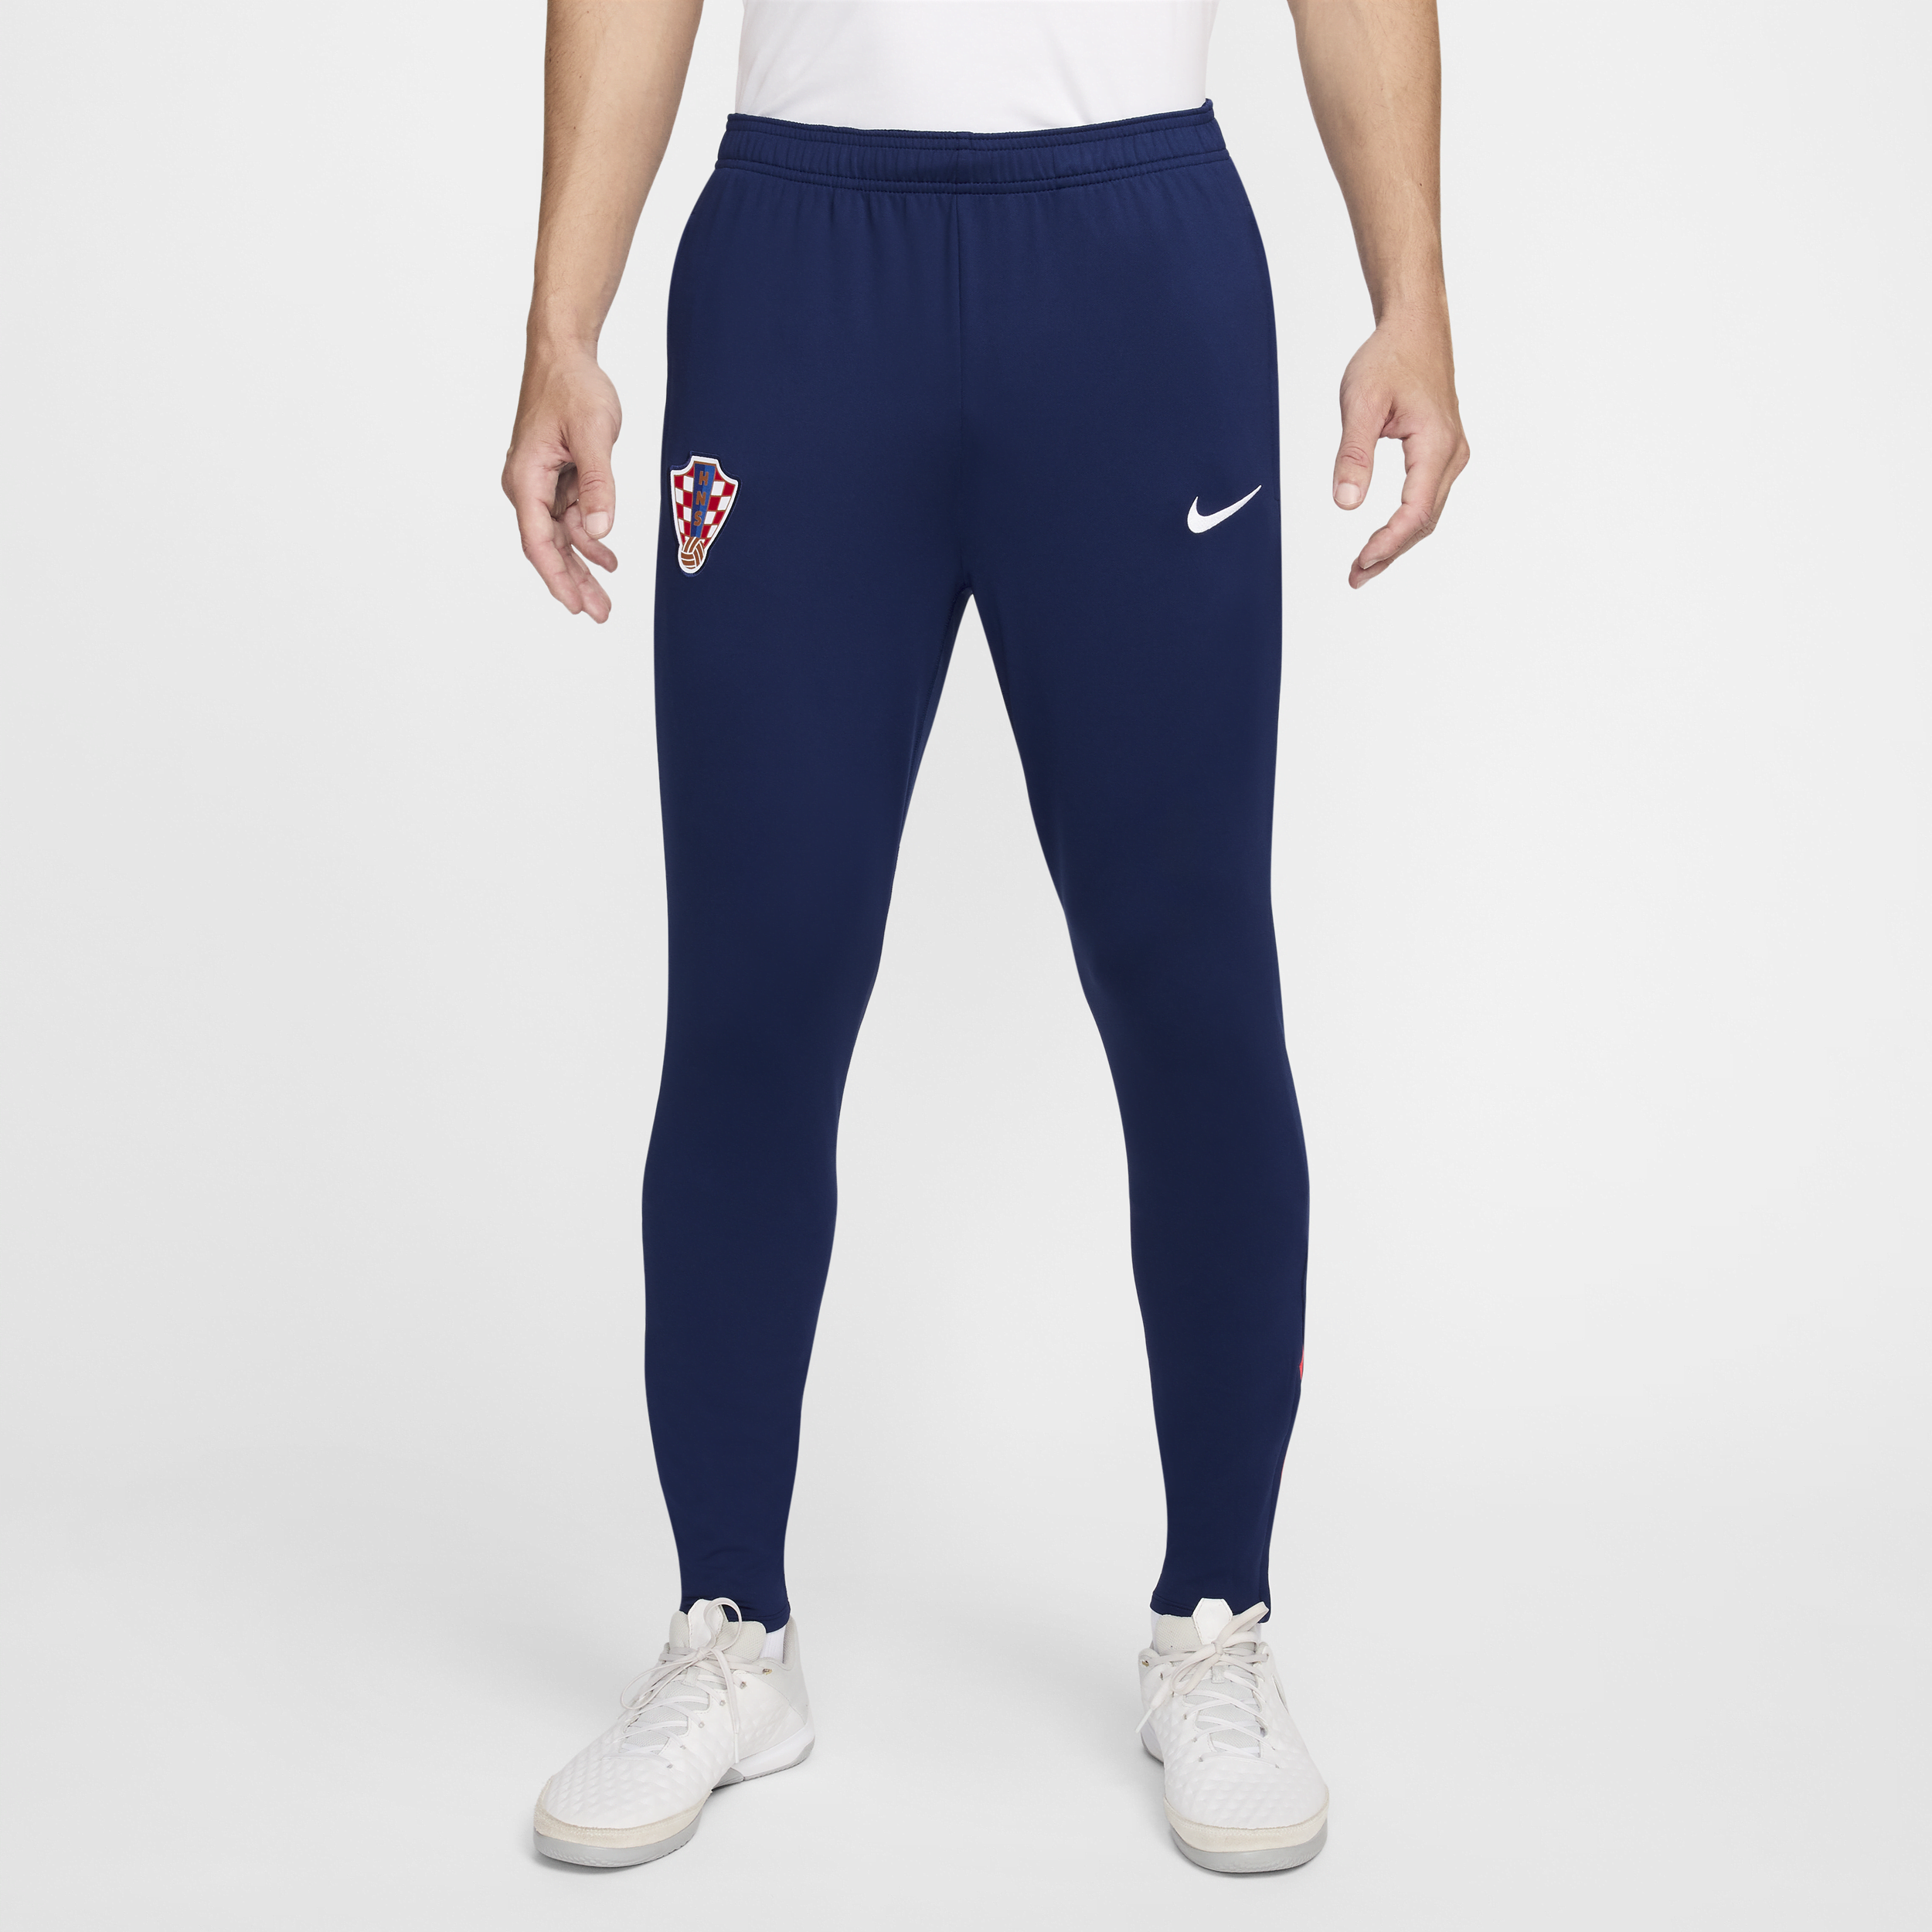 Kroatien Strike Nike Dri-FIT-fodboldbukser til mænd - blå